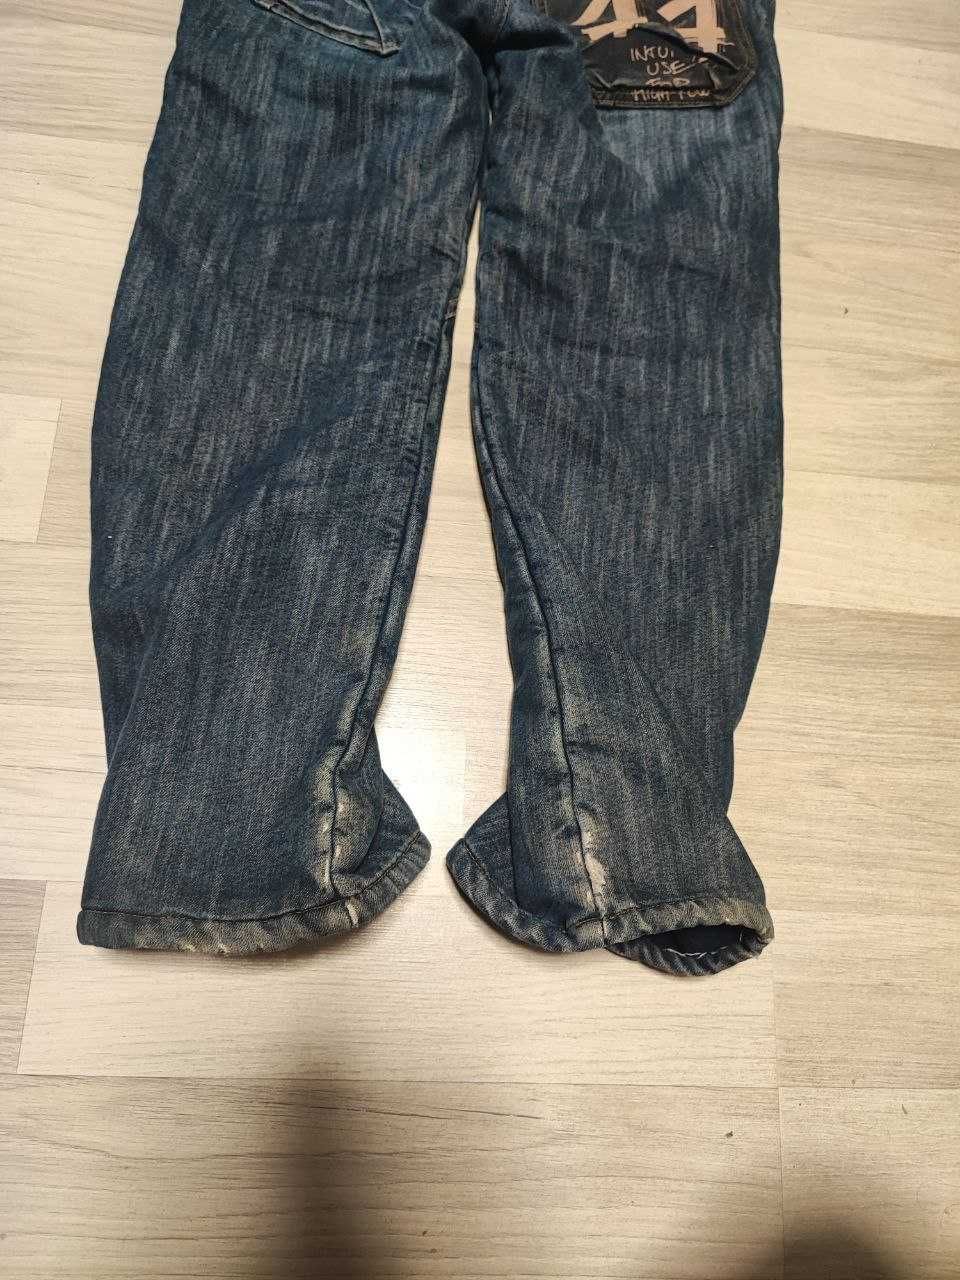 джинсы теплые на флисе на 12 лет, лыжные штаны 152см